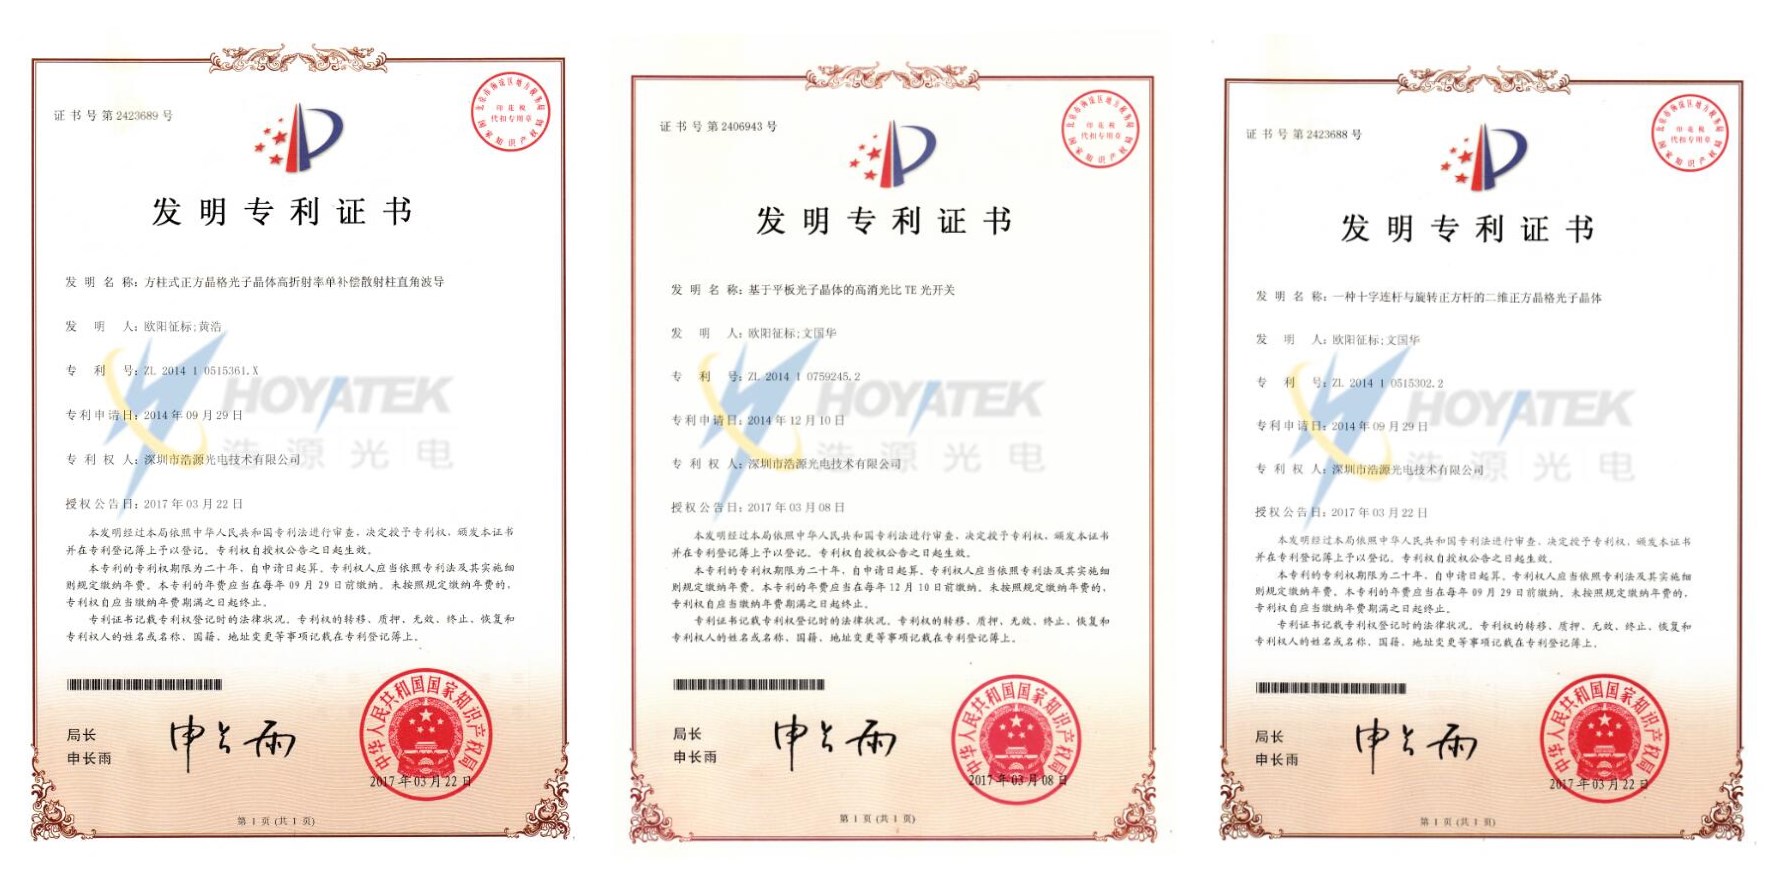 深圳浩源光电获得三项国家专利(图1)